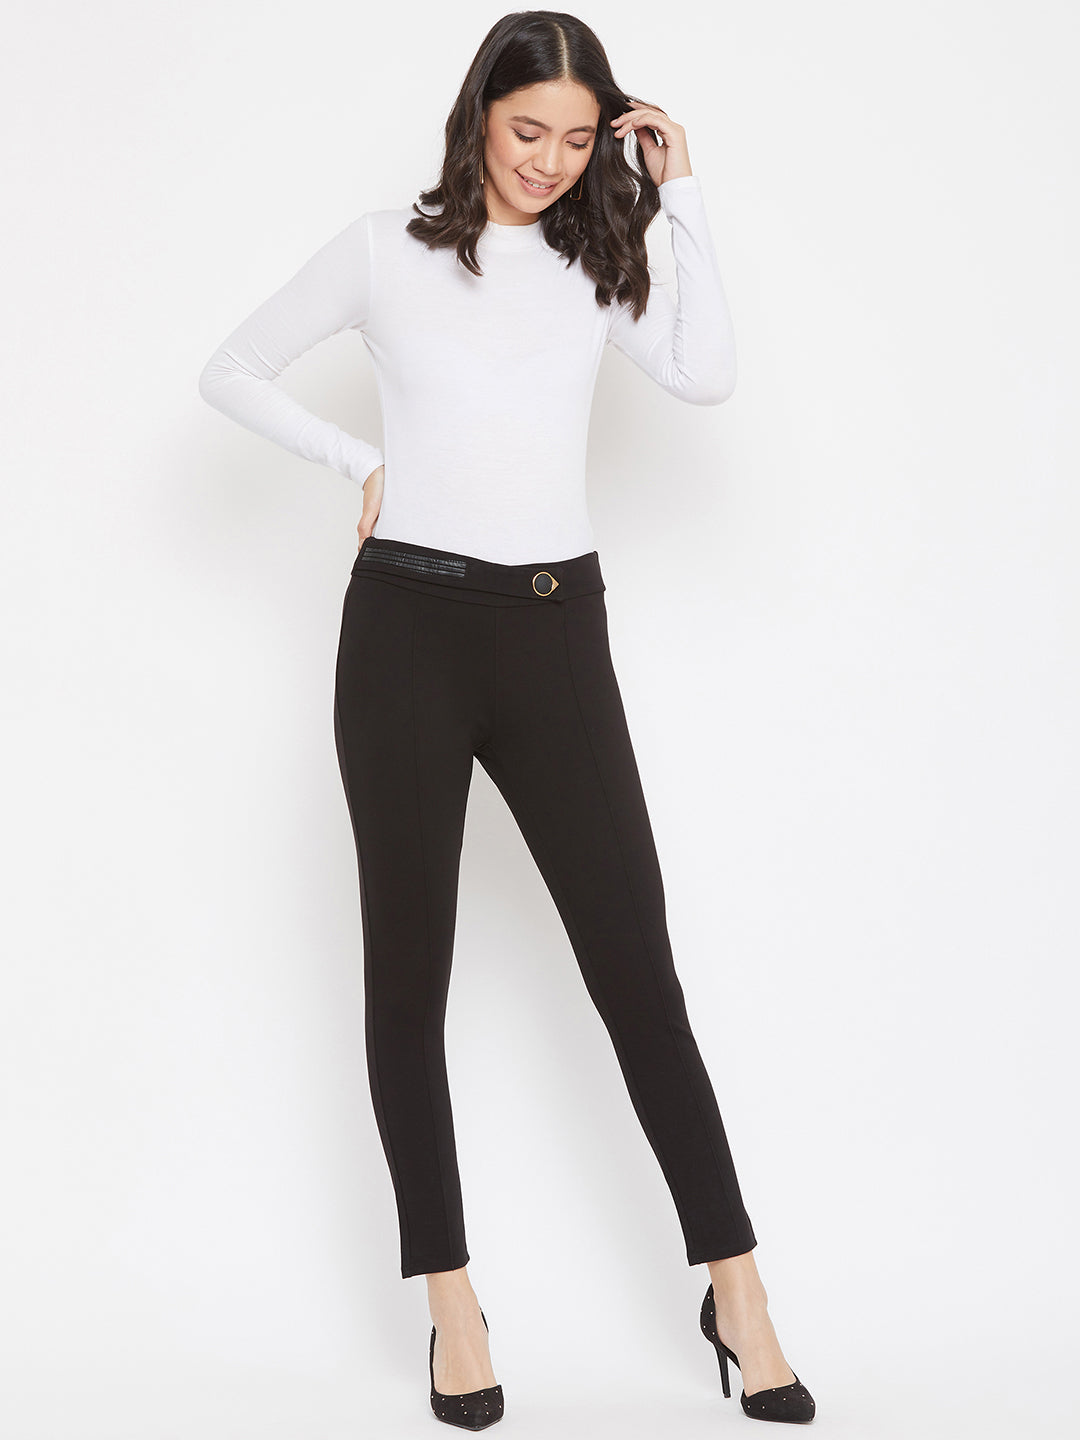 Black Smart fit Trousers - Women Trousers